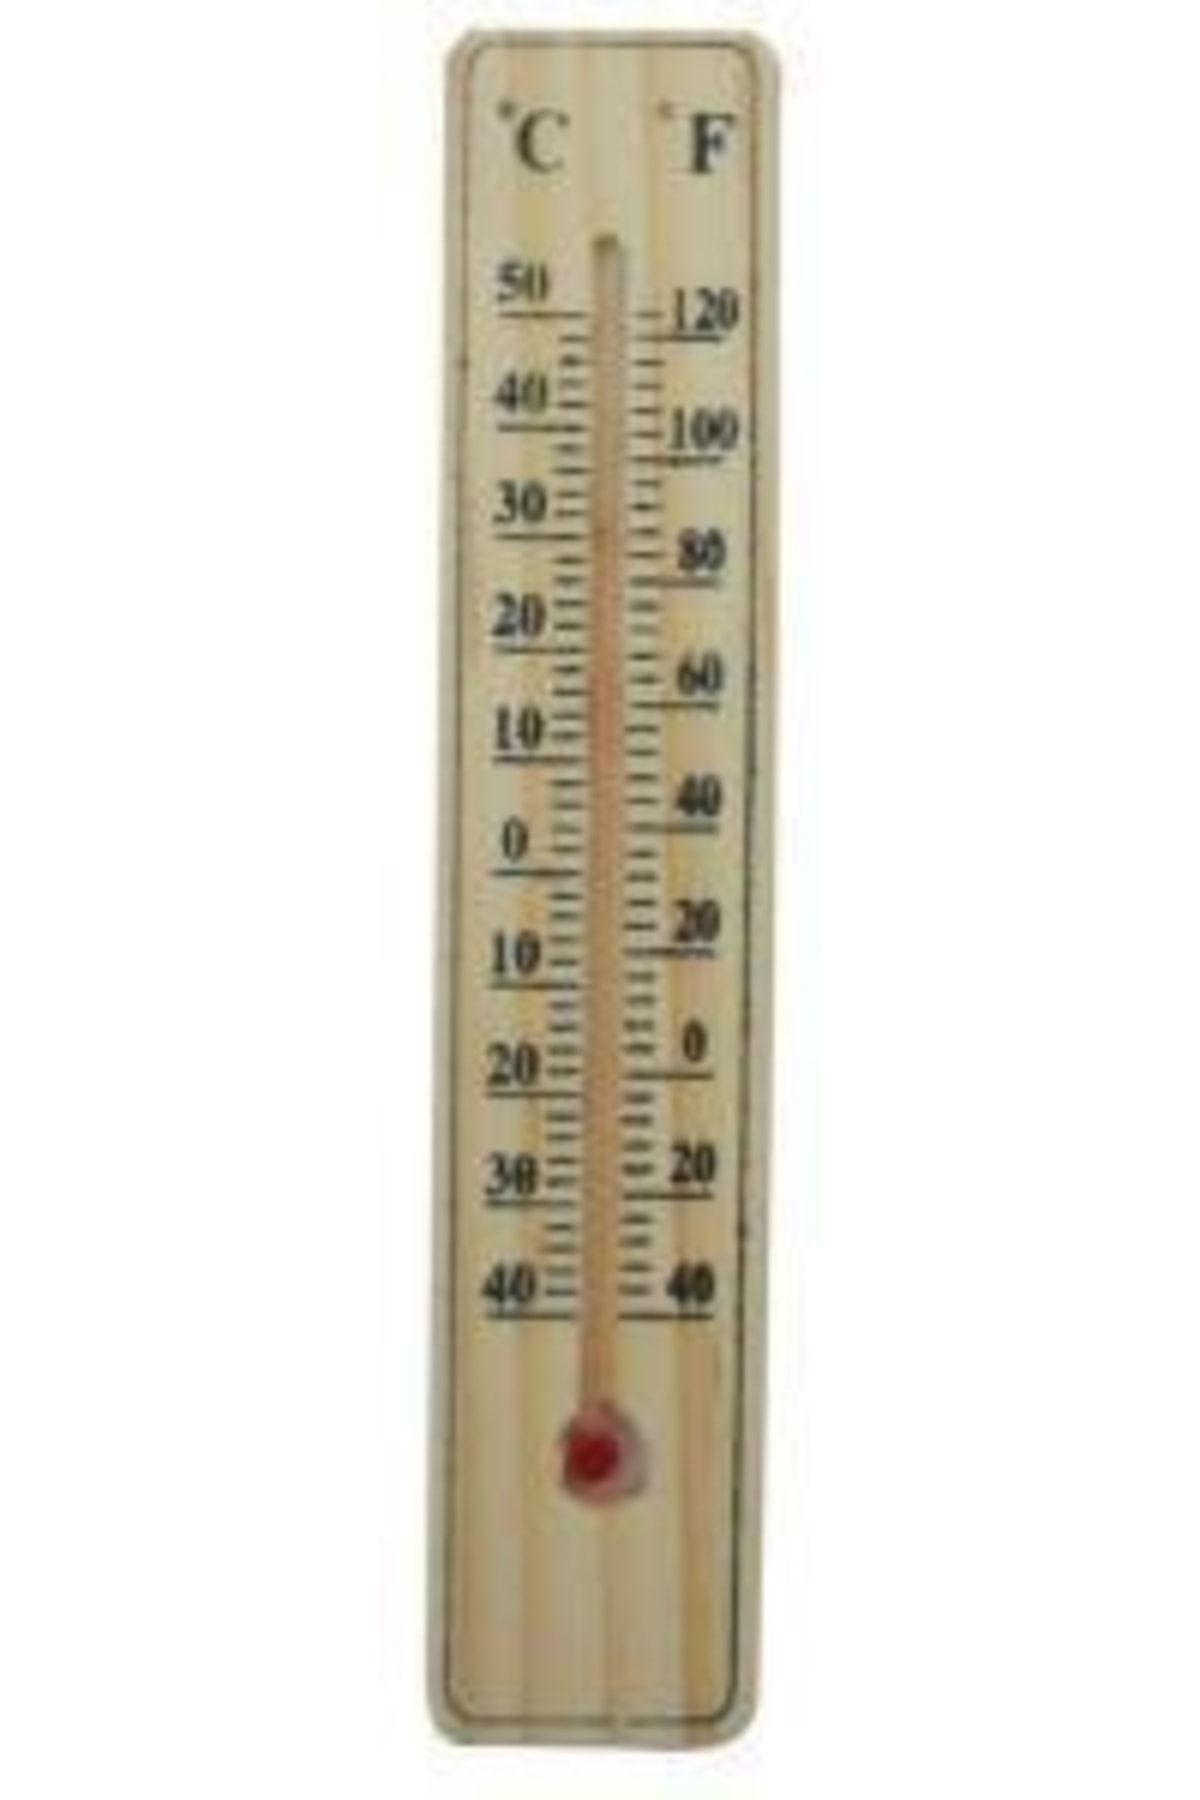 Çokuygunuz Ev Ofis Oda Ahşap Naturel Yapışkanlı Askılıklı Sıcaklık Ölçer Termometre